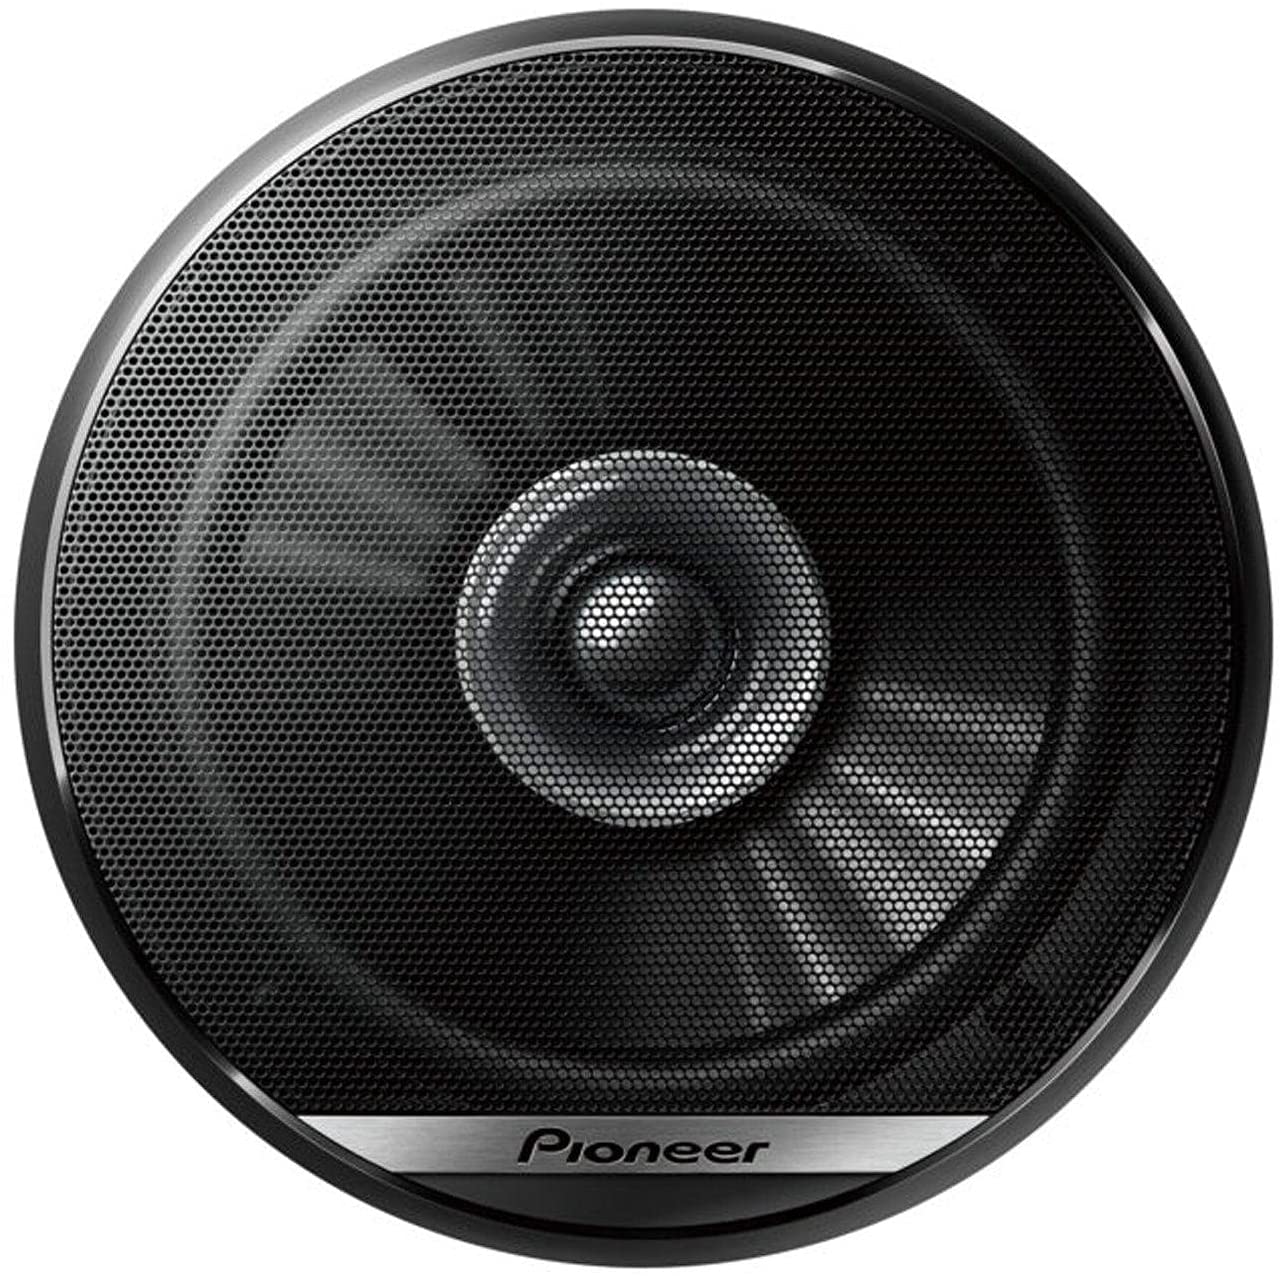 Pioneer TS-G1610F 280W Dual Cone Car Speaker